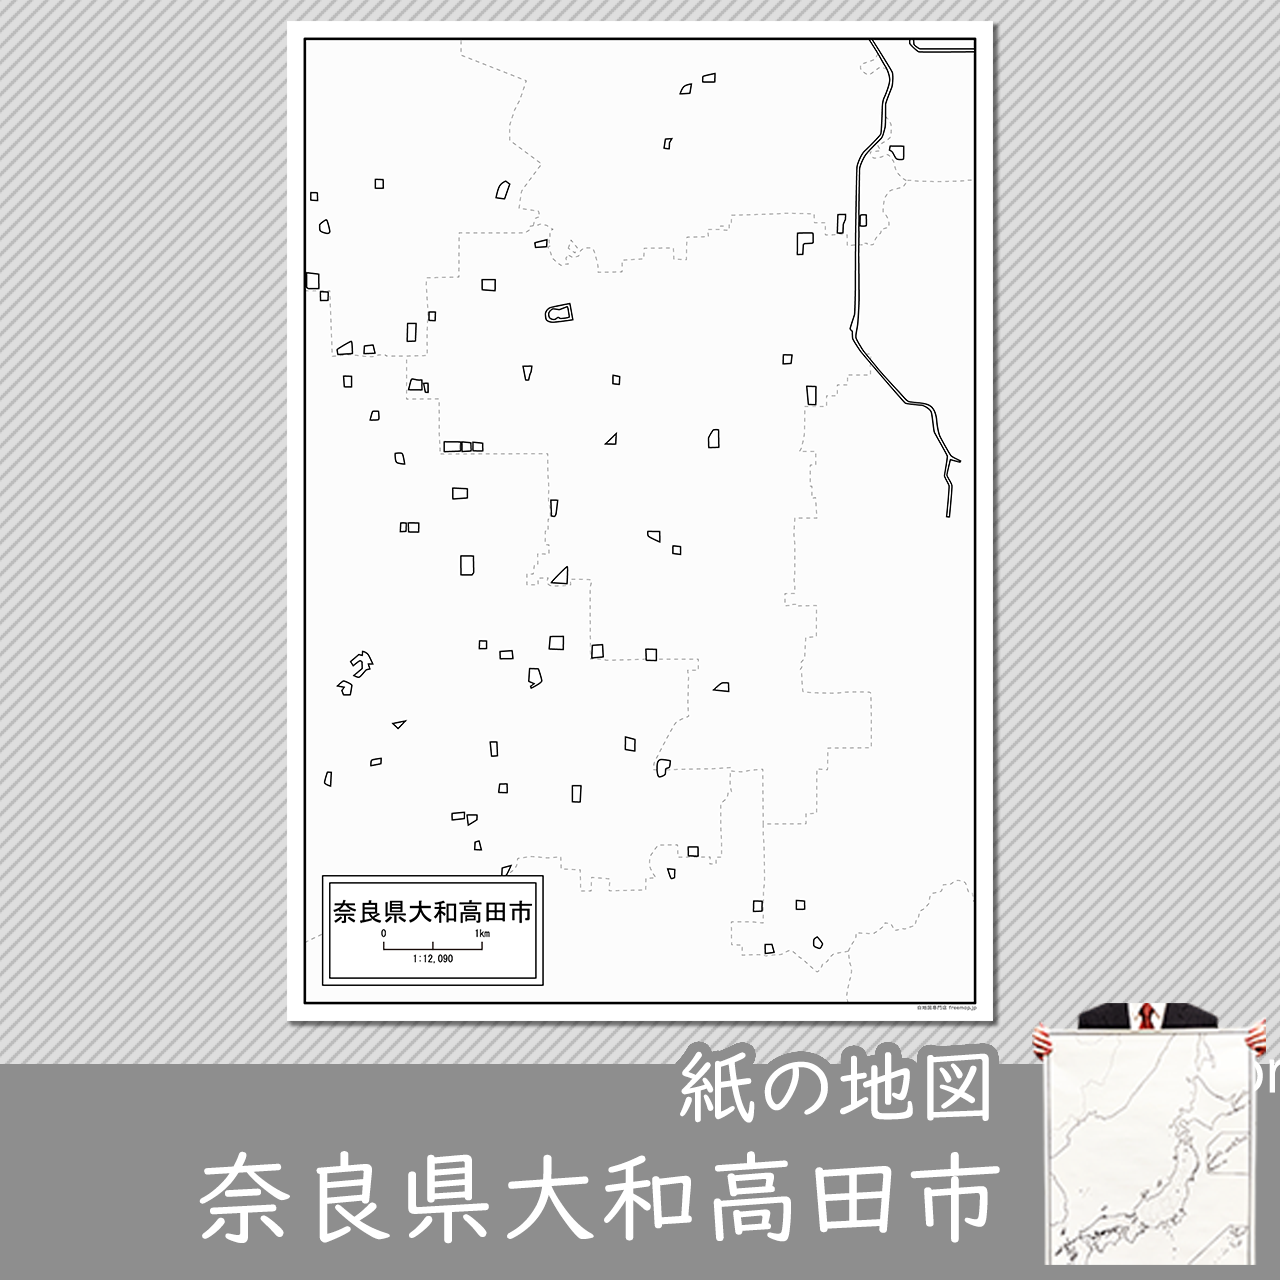 大和高田市の紙の白地図のサムネイル